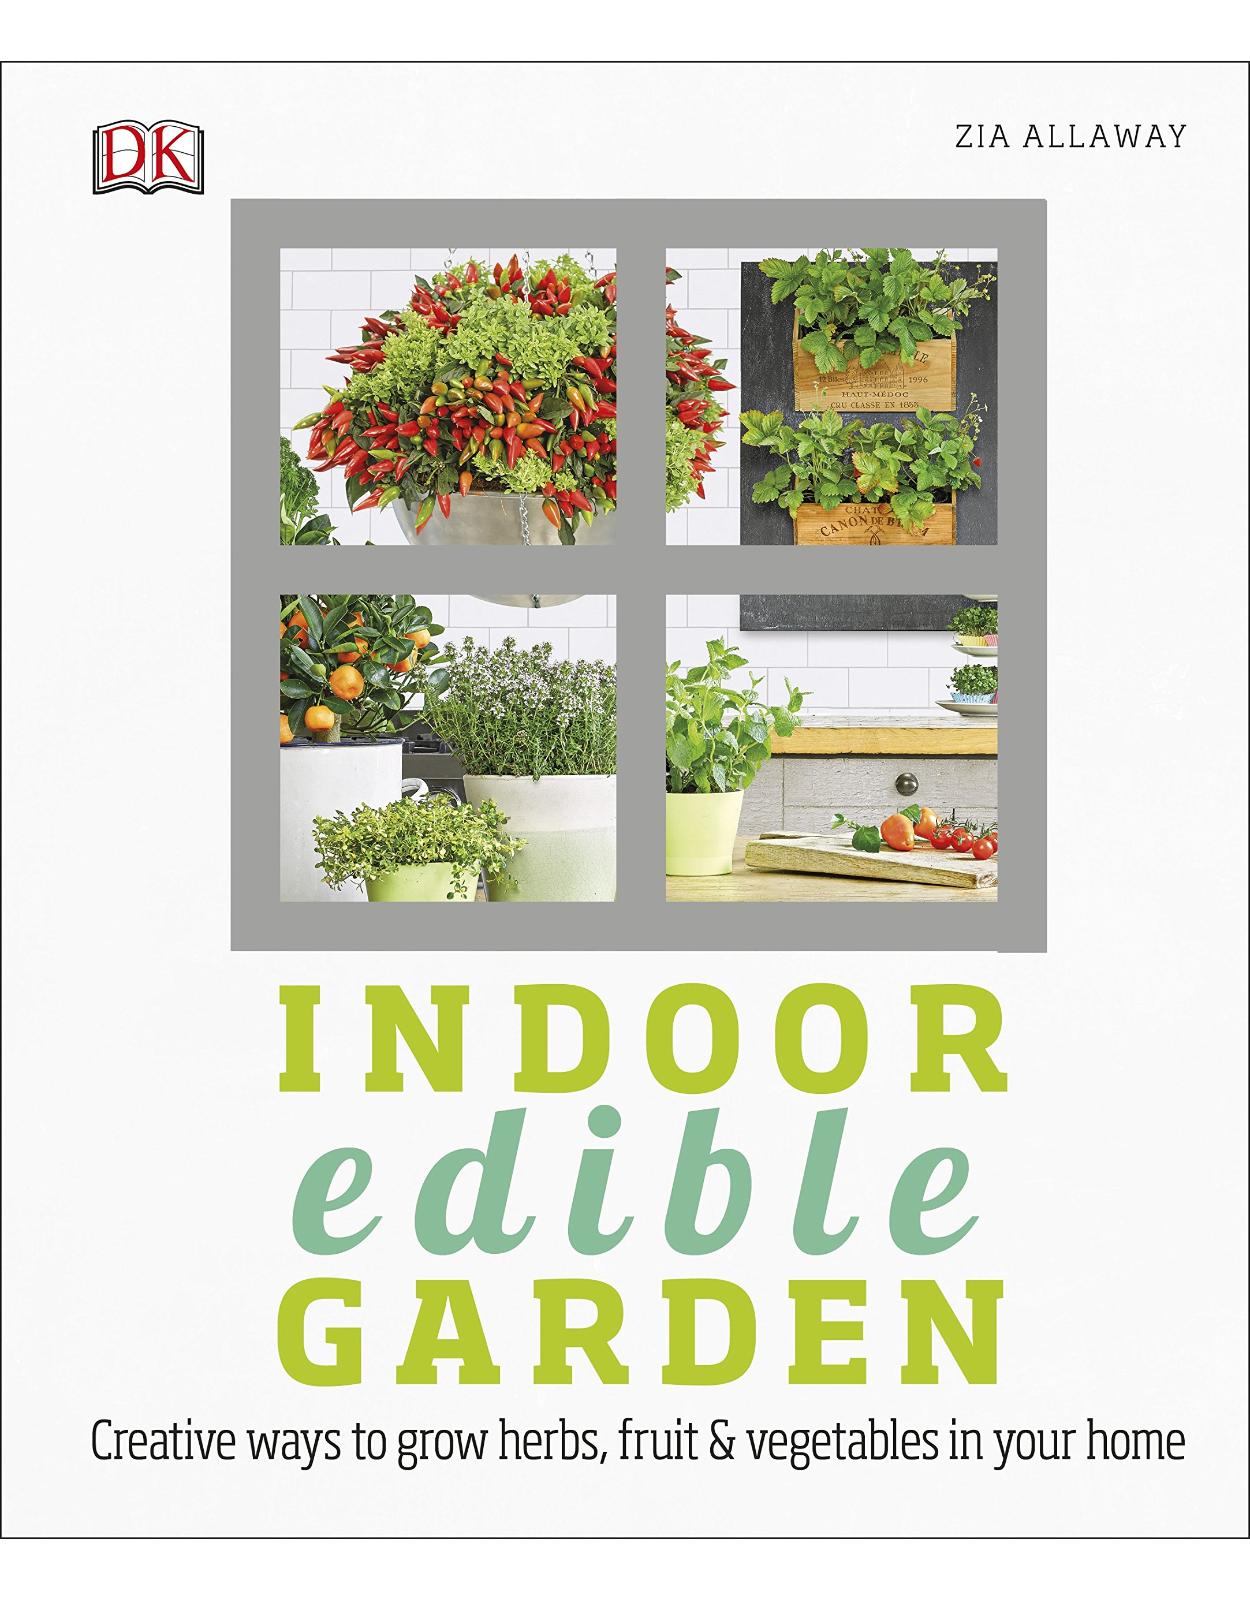 Indoor Edible Garden: How to Grow Herbs, Vegetables & Fruit in your Home